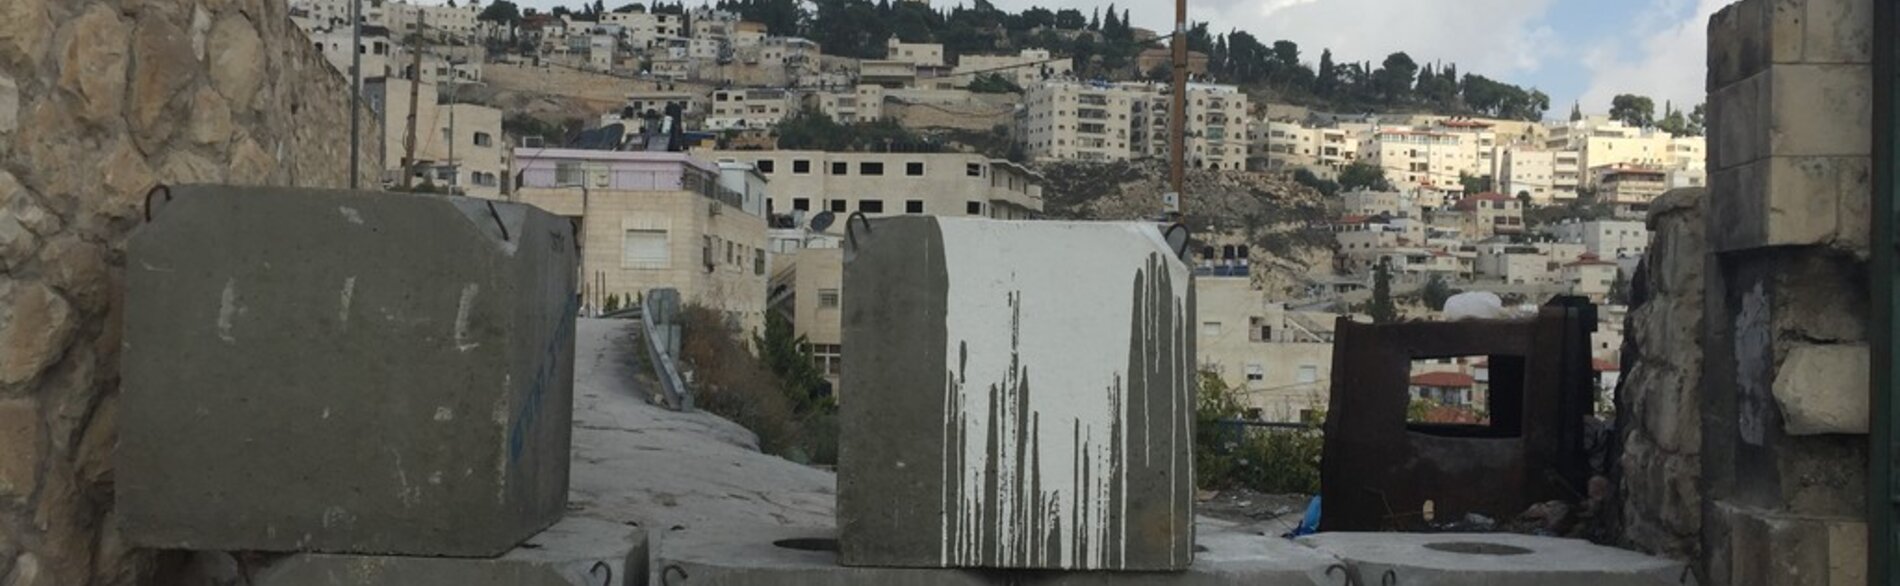 حي رأس العامود، القدس الشرقية، تشرين الثاني/نوفمبر 20,صورة بواسطة مكتب تنسيق الشؤون الإنسانية